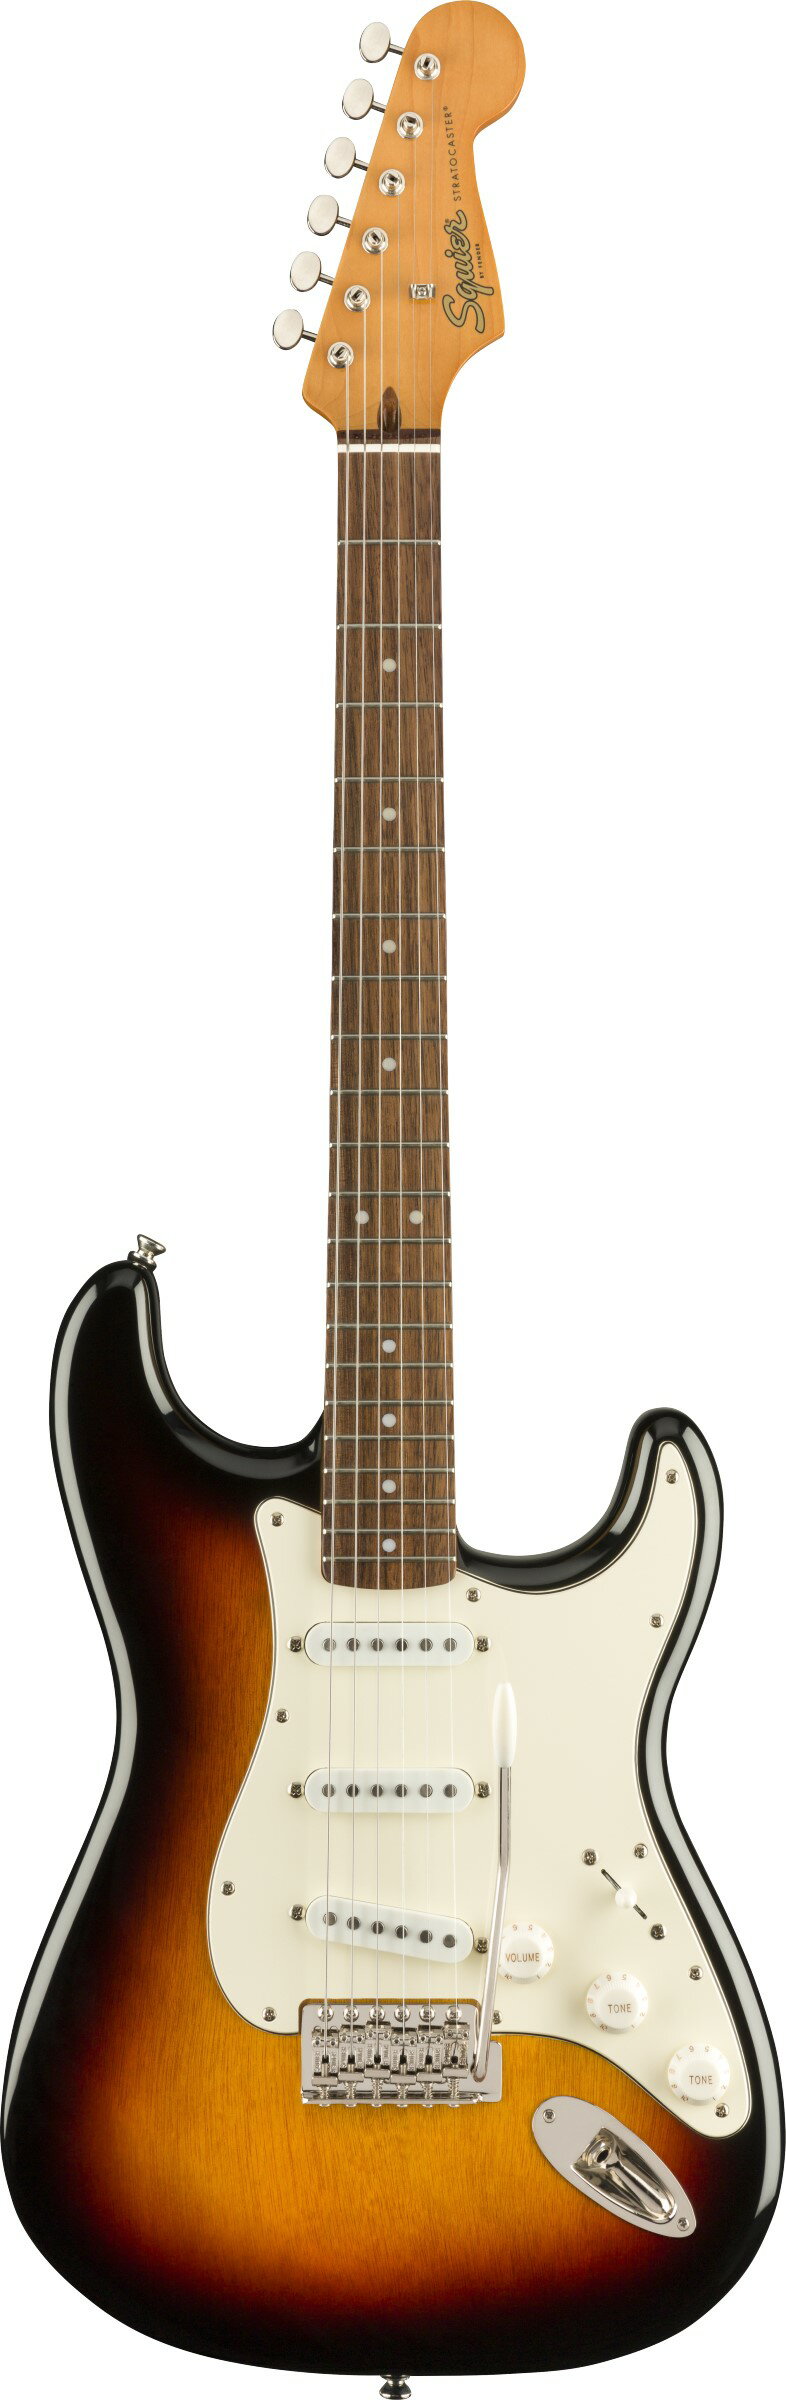 今ならFenderロゴ入り純正ストラップをプレゼント！ Squier by Fender Classic Vibe '60s Stratocaster 60年代に進化したStratocaster&#174;を記念するClassic Vibe ‘60s Stratocasterは、フェンダーが開発したアルニコシングルコイルピックアップを3基搭載し、幅広いサウンドメイキングが可能です。ナロートールフレットを装備した9.5インチラジアス指板のCネックシェイプ、ヴィンテージスタイルのトレモロシステムなど、快適で表情豊かな演奏を実現するスペックを備えています。ヘッドやネックは60年代のStratocasterにインスパイアされた仕上げとなっており、本格的なオールドスクールの風格をまとっています。 Classic Vibe '60s Stratocaster Specs ・Series: Classic Vibe ・Body Material: Nato ・Body Finish: Gloss Polyurethane ・Neck: Maple, “C” Shape ・Neck Finish: Tinted Gloss Urethane ・Fingerboard: Indian Laurel, 9.5” (241 mm) ・Frets: 21, Narrow Tall ・Position Inlays: White Dot (Indian Laurel) ・Nut (Material/Width): Bone, 1.650” (42 mm) ・Tuning Machines: Vintage-Style ・Scale Length: 25.5” (648 mm) ・Bridge: 6-Saddle Vintage-Style Synchronized Tremolo ・Pickguard: 3-Ply Parchment ・Pickups: Fender&#174; Designed Alnico Single-Coil (Bridge), Fender&#174; Designed Alnico Single-Coil (Middle),Fender&#174; Designed Alnico Single-Coil (Neck) ・Pickup Switching: 5-Position Blade: Position 1. Bridge Pickup, Position 2. Bridge and Middle Pickup, Position 3. Middle Pickup, Position 4. Middle and Neck Pickup, Position 5. Neck Pickup ・Controls: Master Volume, Tone 1. (Neck Pickup), Tone 2. (Bridge/Middle Pickup) ・Control Knobs: Aged White Plastic ・Hardware Finish: Nickel ※商品画像はサンプルです。 ★掲載の商品は店頭や他のECサイトでも並行して販売しております。在庫情報の更新には最大限の努力をしておりますが、ご注文が完了しましても売り切れでご用意できない場合がございます。 　また、お取り寄せ商品の場合、生産完了などの理由でご用意できない場合がございます。 　その際はご注文をキャンセルさせていただきますので、予めご了承くださいませ。 ★お届け先が北海道や沖縄、その他離島の場合、「送料無料」と表記の商品であっても別途中継料や送料を頂戴いたします。その際は改めてご連絡を差し上げますのでご了承ください。　